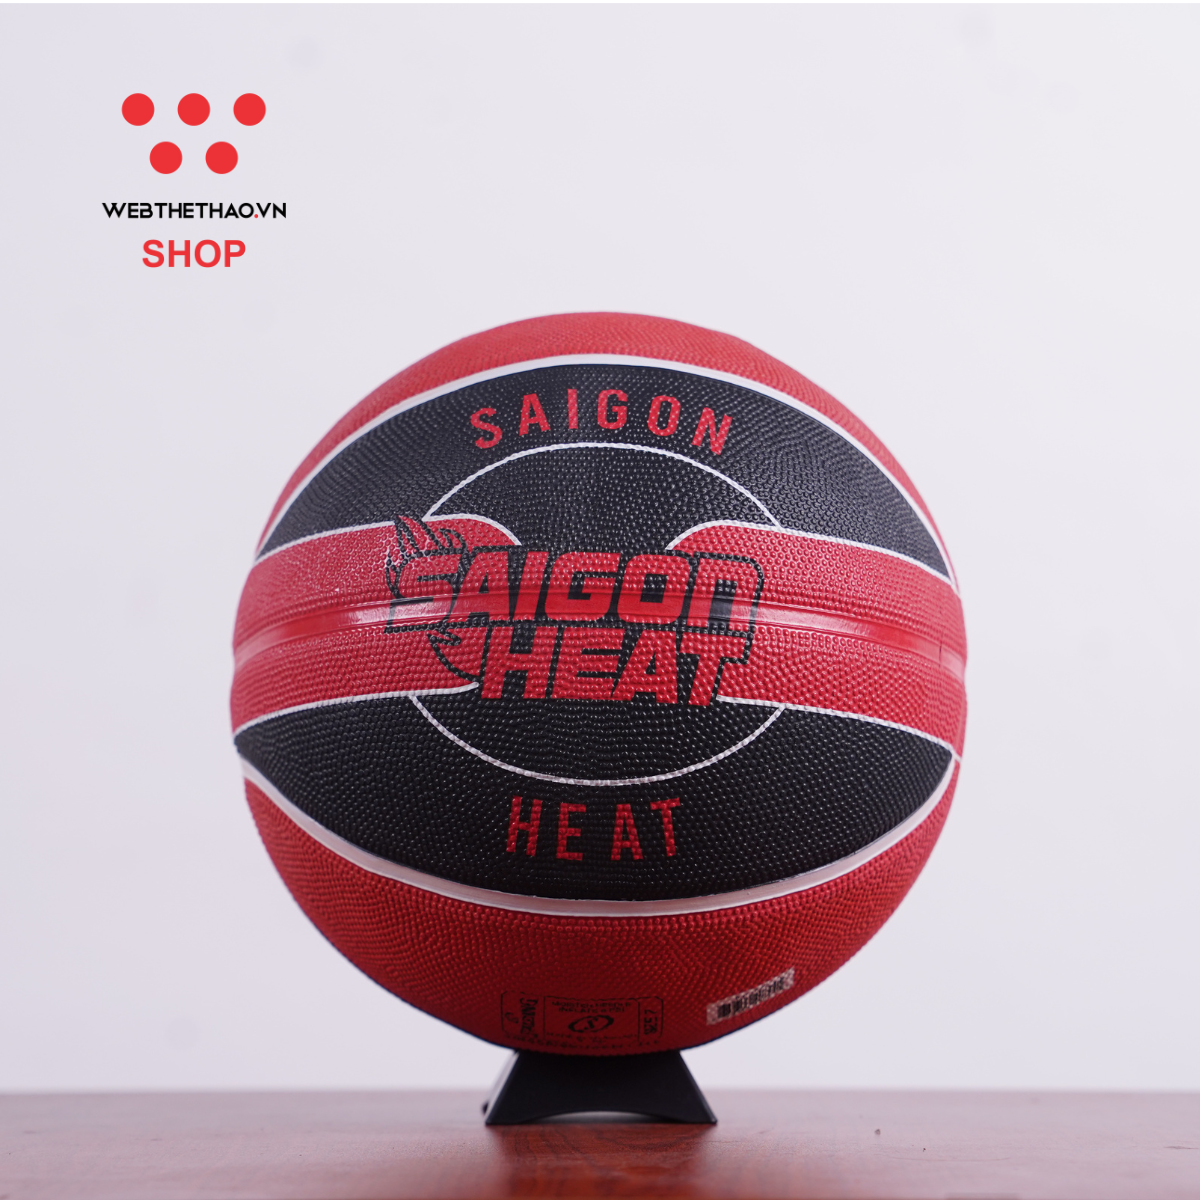 Bóng rổ Spalding VBA Team SaiGon Heat Outdoor Size 7 84-470z - Hàng Chính Hãng